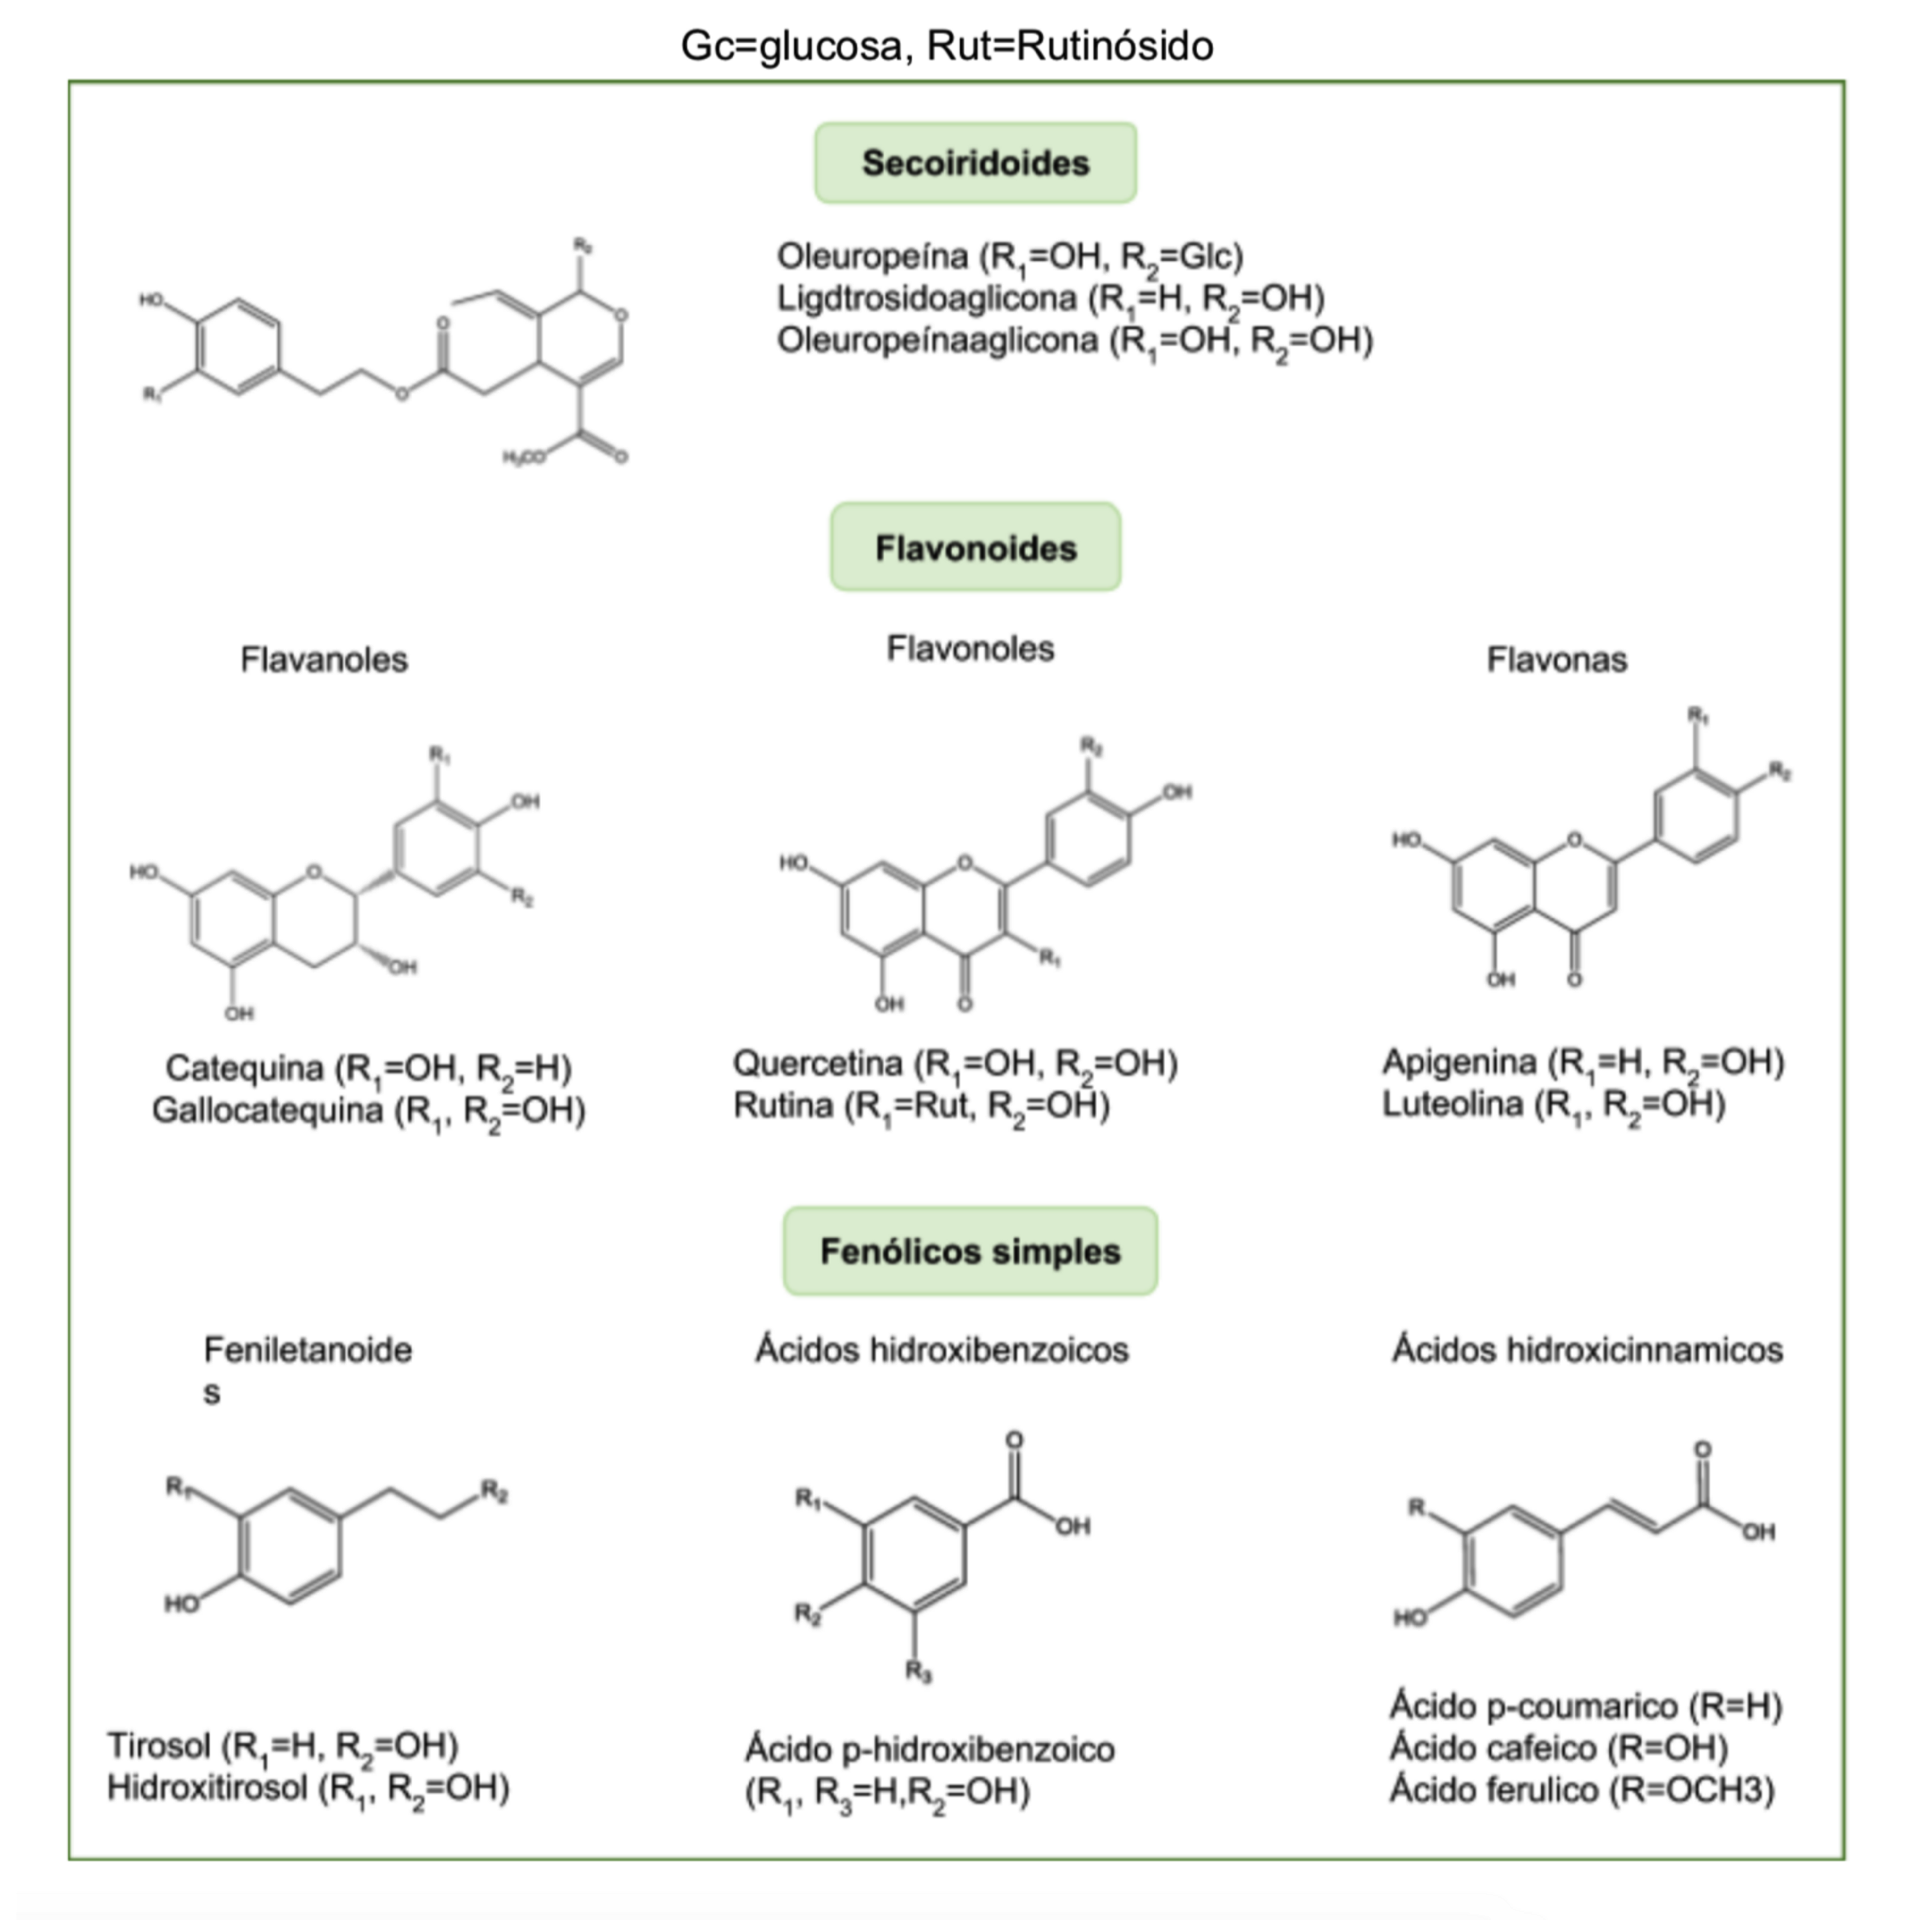 Ejemplos de compuestos fenólicos presentes en la hoja de olivo (38).